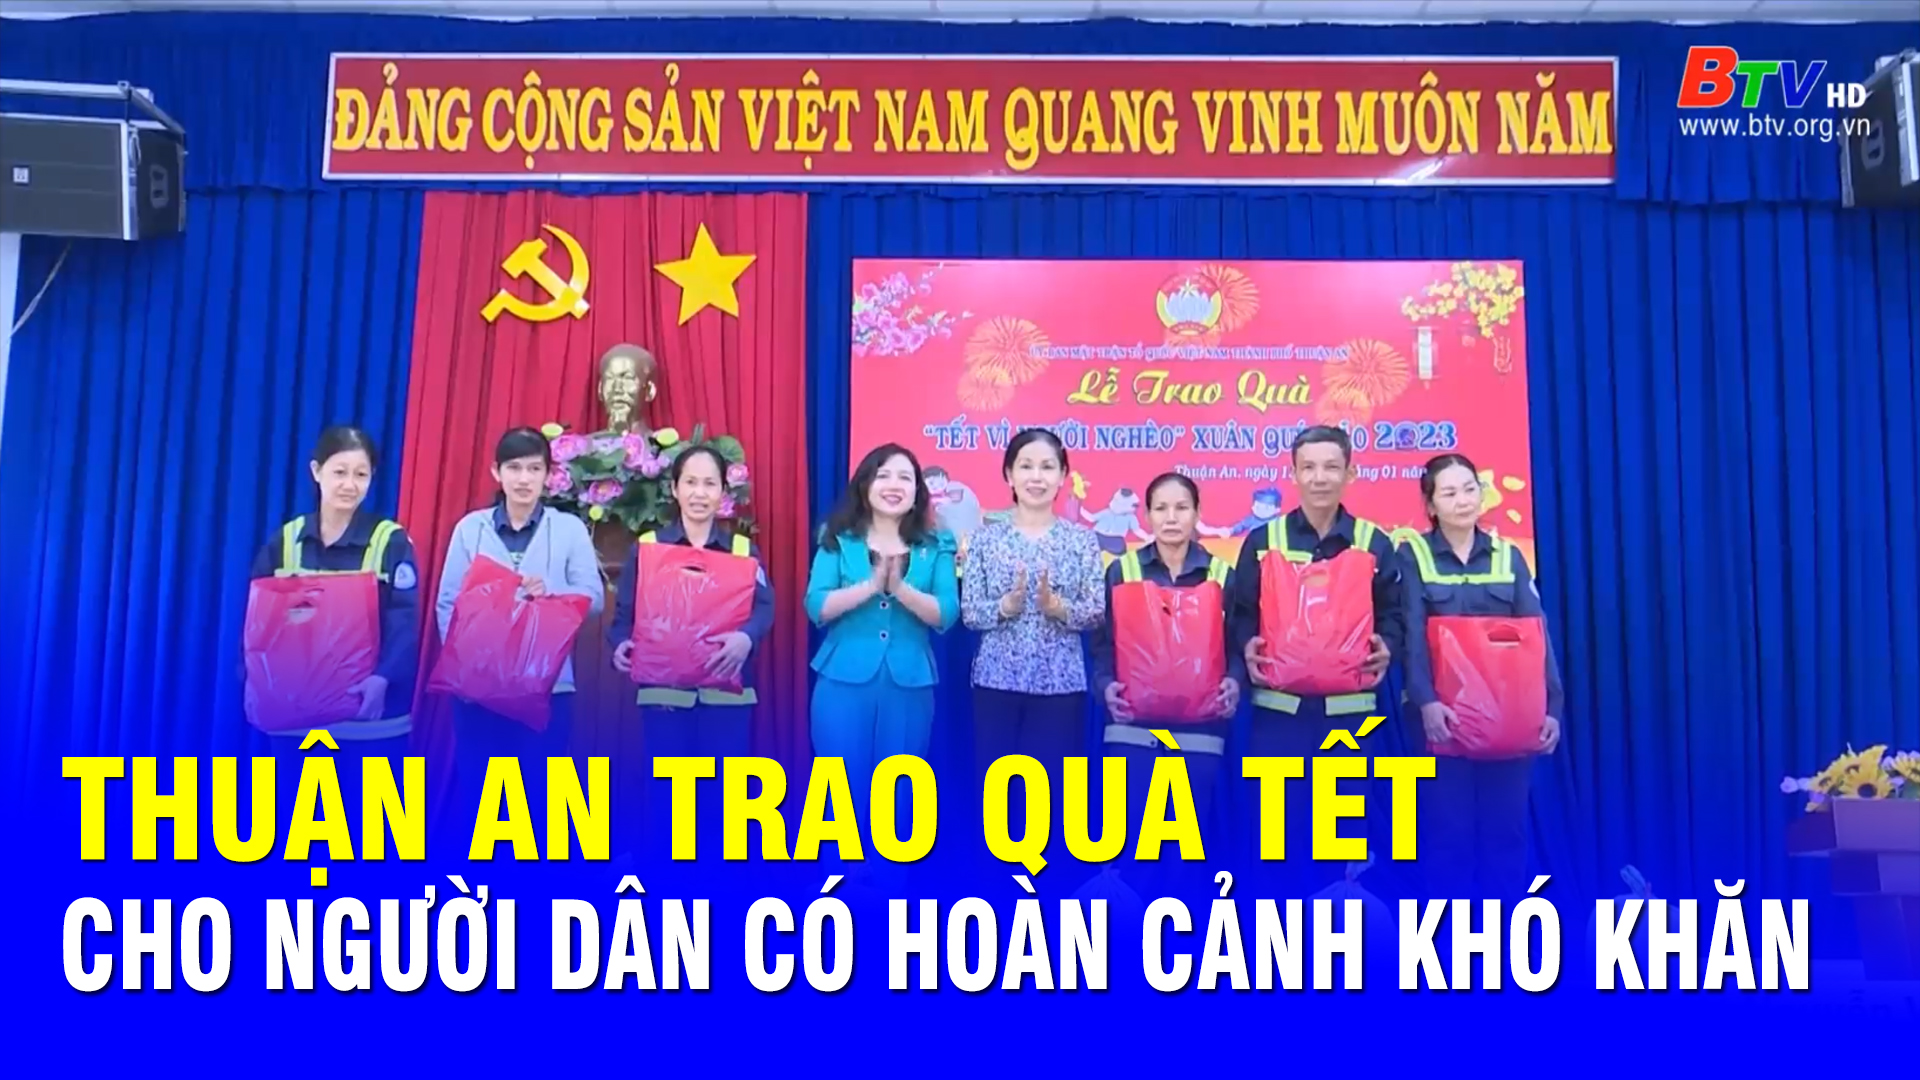 Thuận An trao quà Tết cho người dân có hoàn cảnh khó khăn